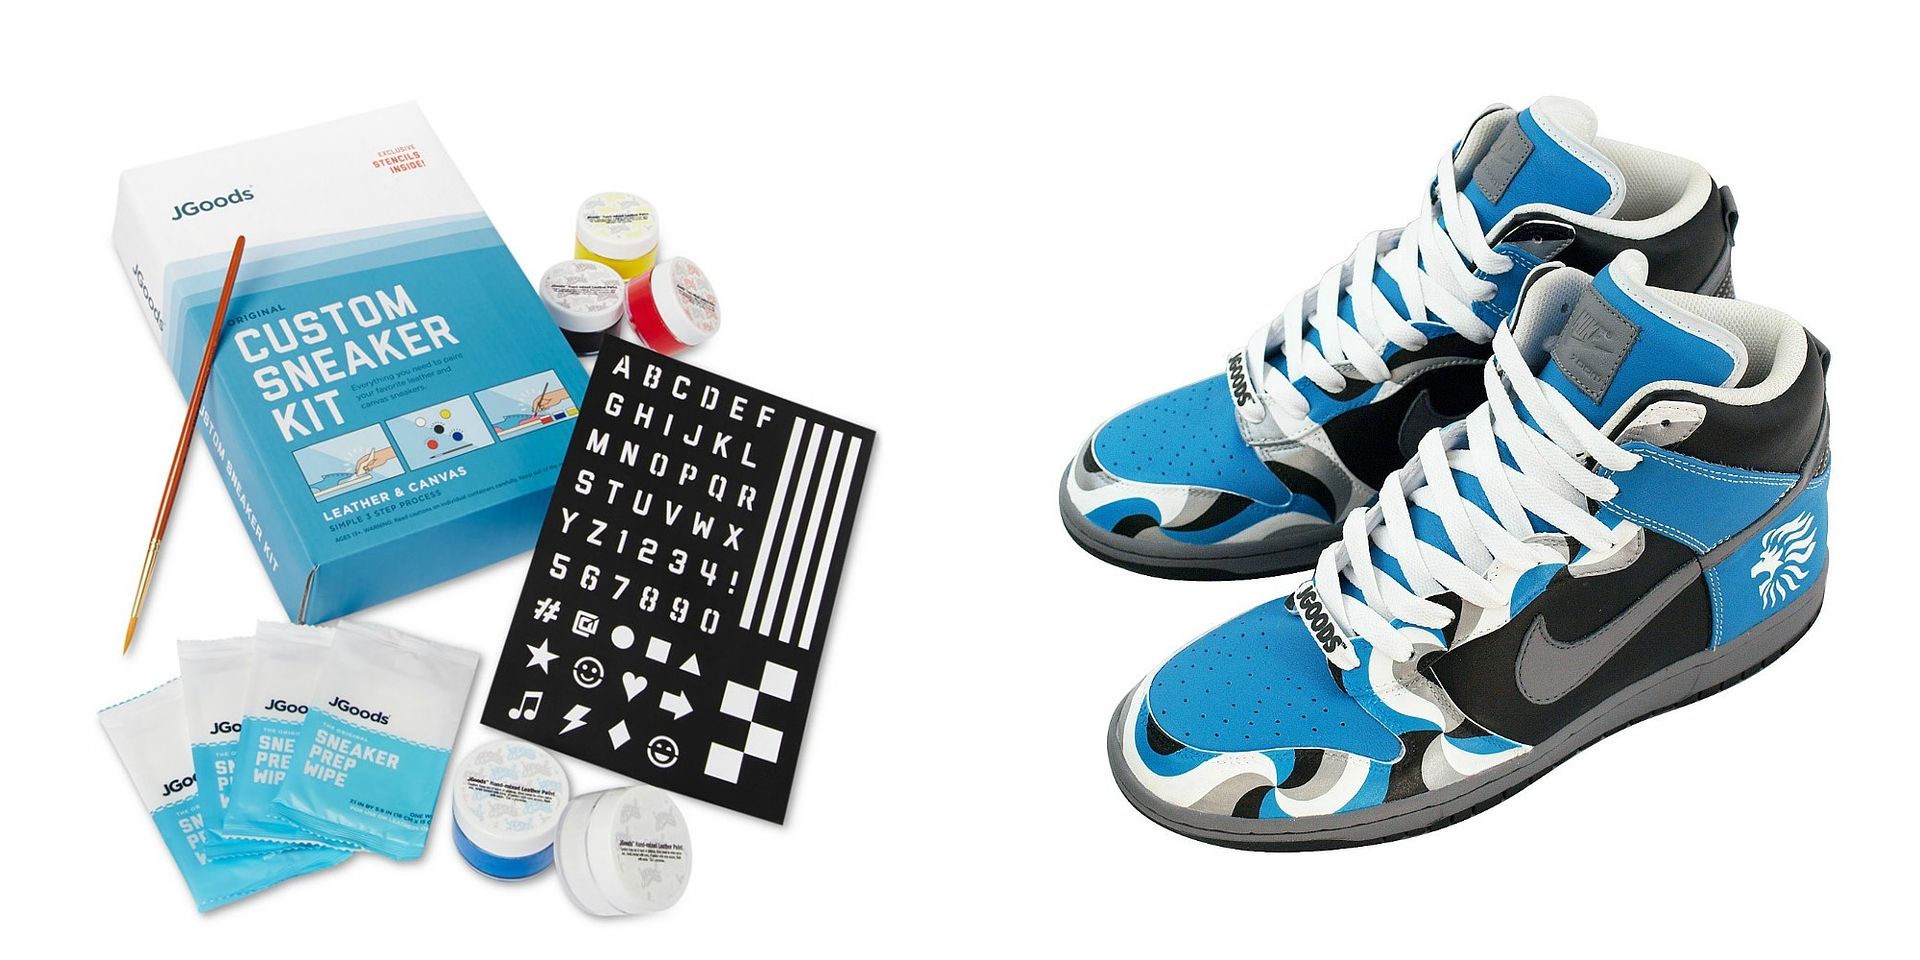 Craft kits for kids: J.Goods Custom Sneaker Kit